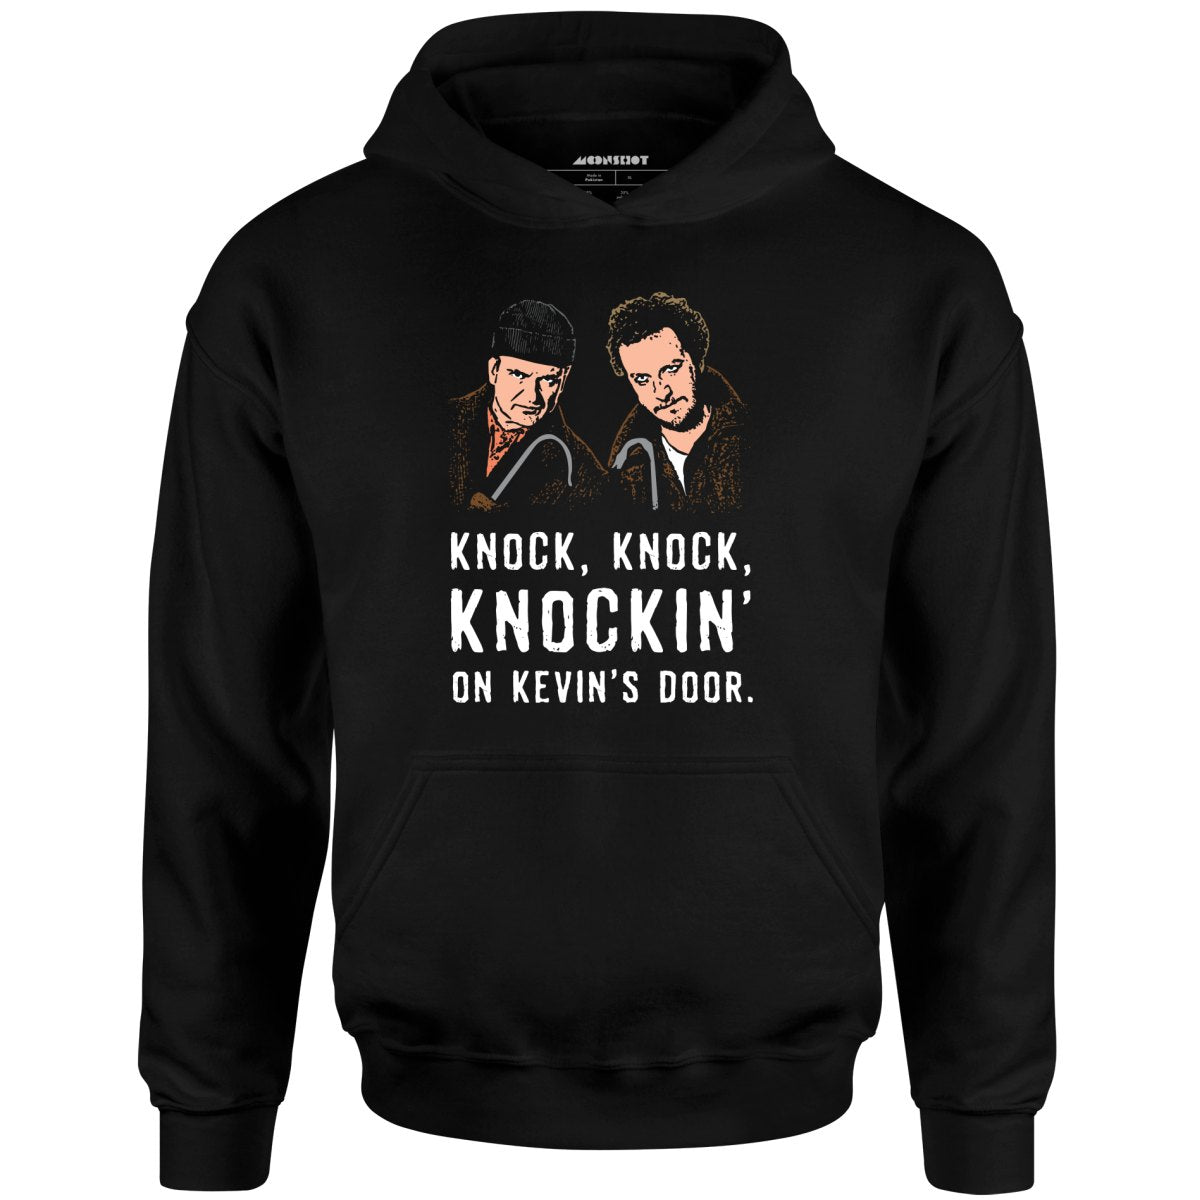 Knock, Knock, Knockin' on Kevin's Door - Unisex Hoodie